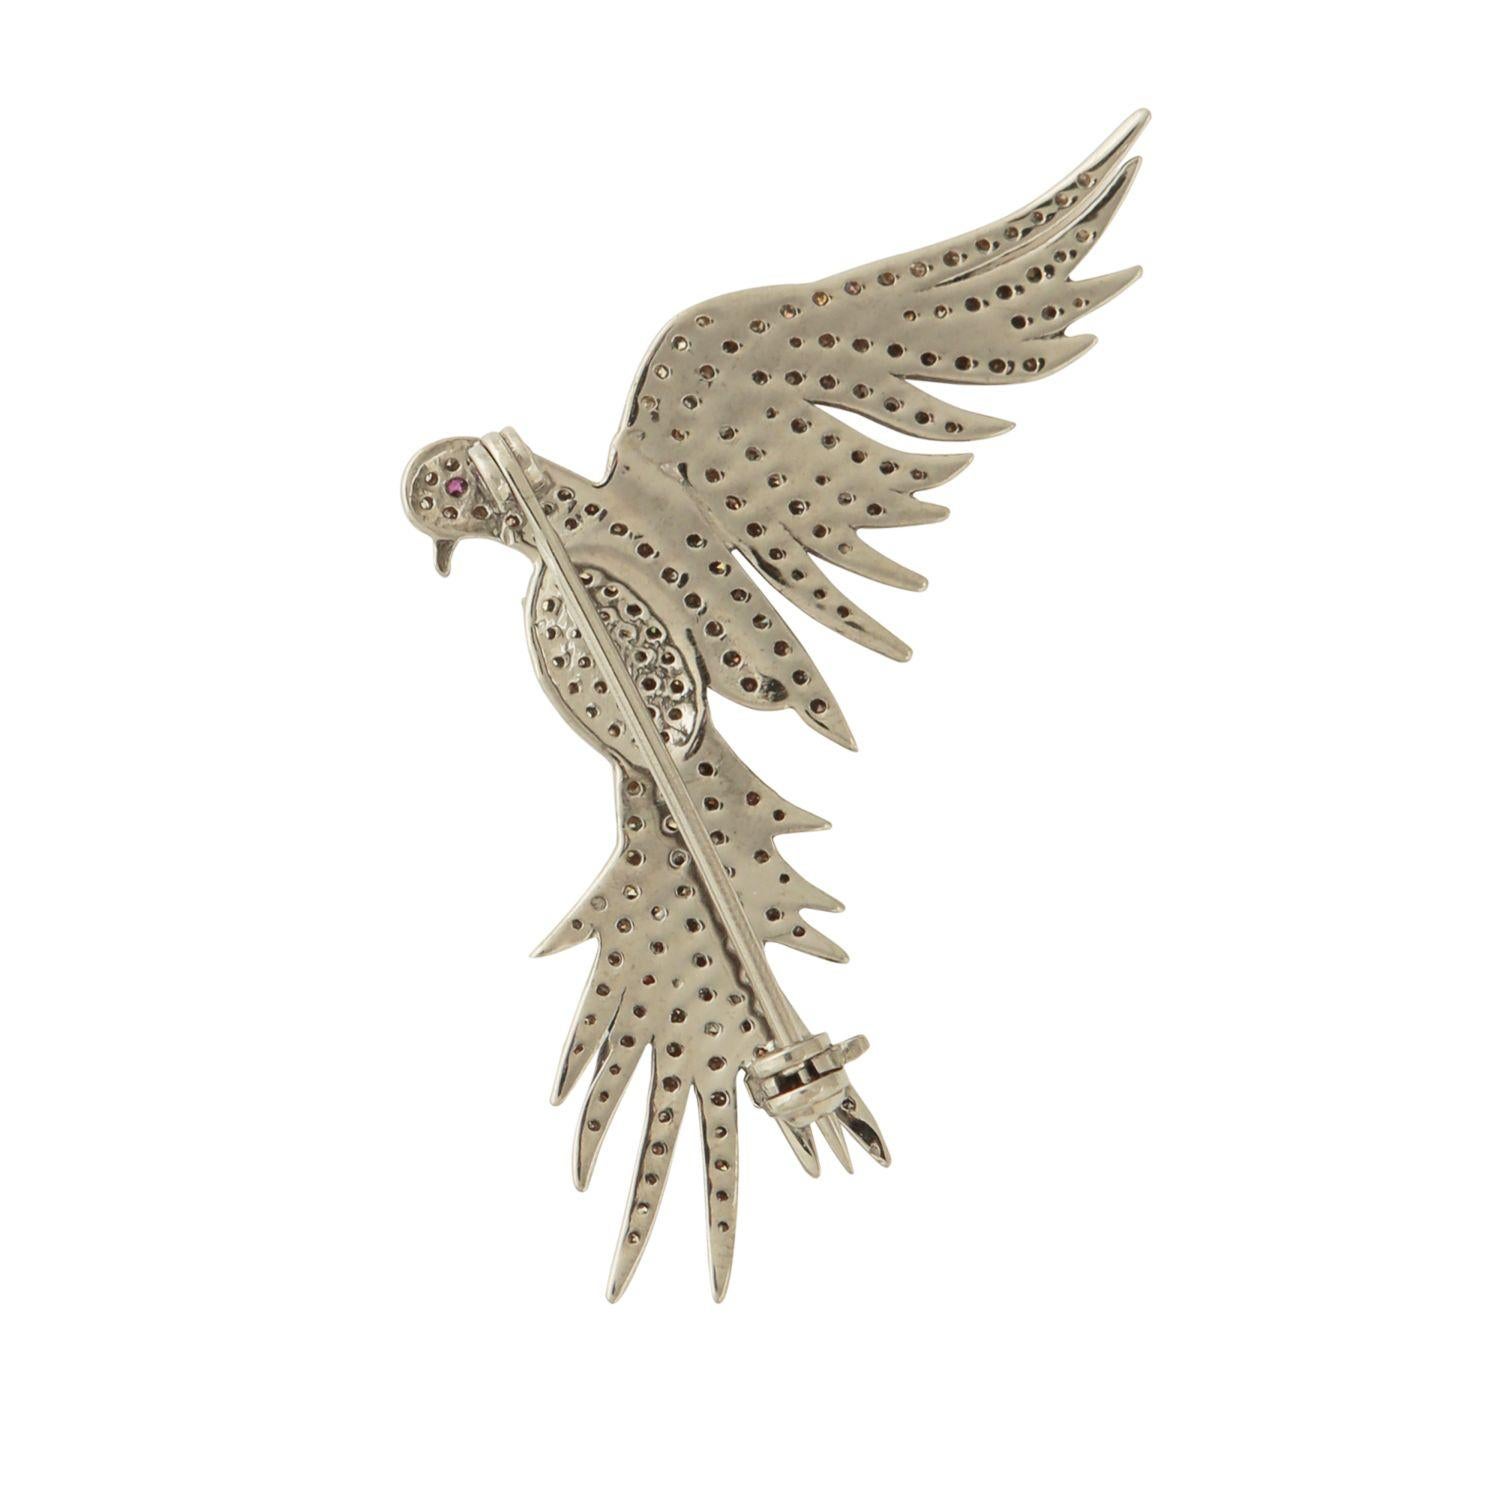 Une broche en diamant étonnante dans un design d'oiseau.

1.14 carats de diamants pavés à taille unique ; 4,67 grammes d'argent.

Un mécanisme de fixation de broche facile.

4.5 cm en pleine longueur.